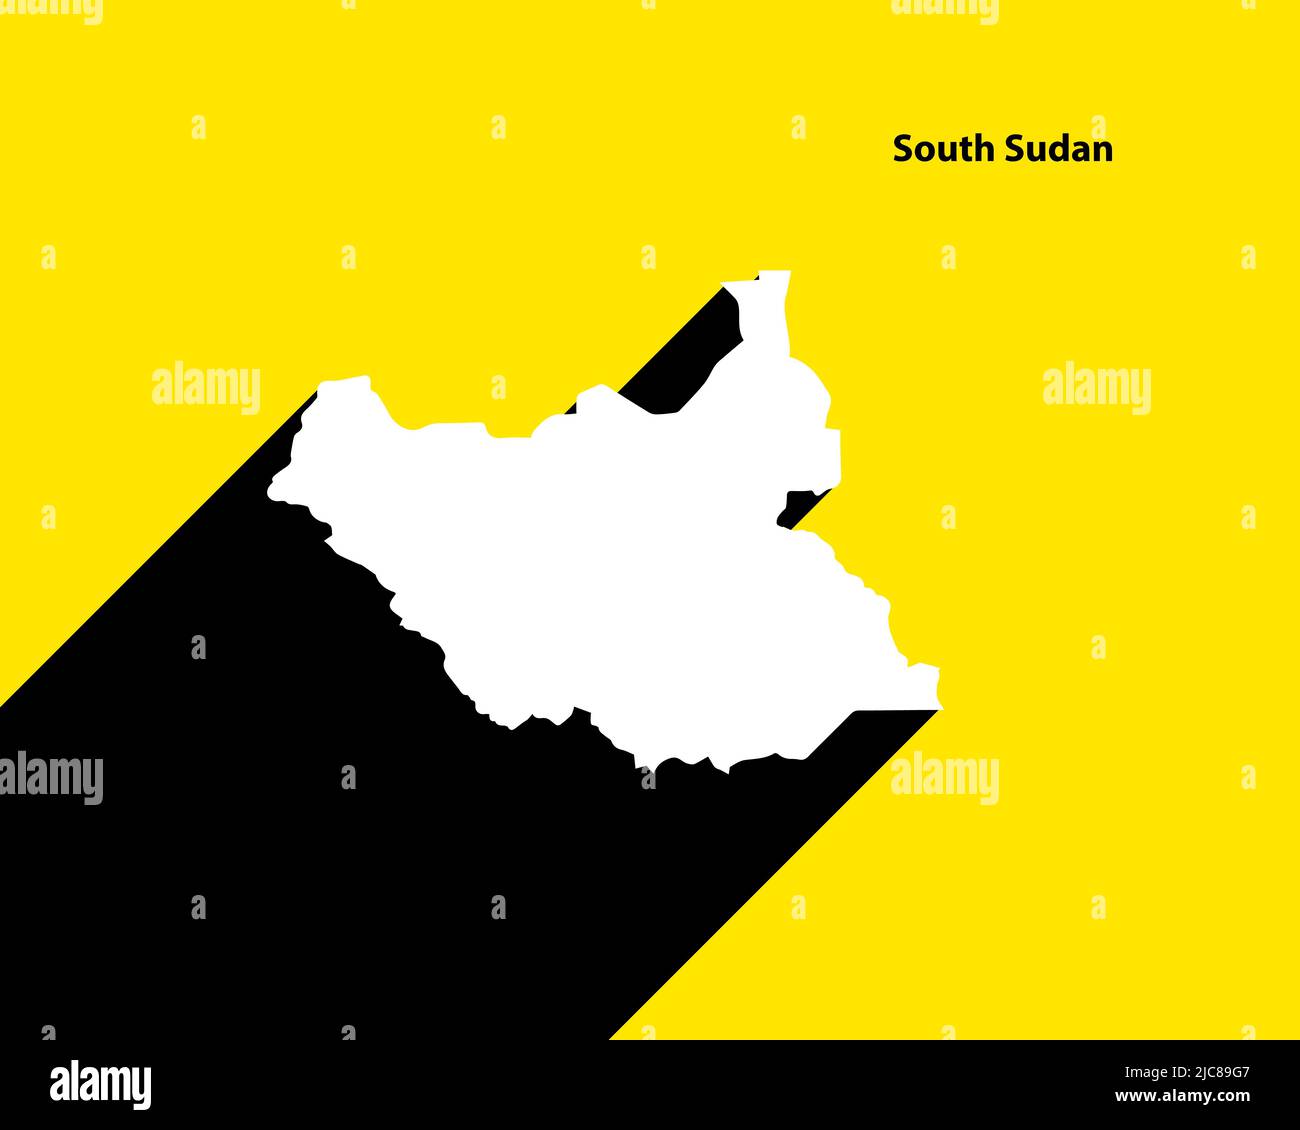 Mappa del Sud Sudan su poster retrò con lunga ombra. Segno vintage facile da modificare, manipolare, ridimensionare o colorare. Illustrazione Vettoriale